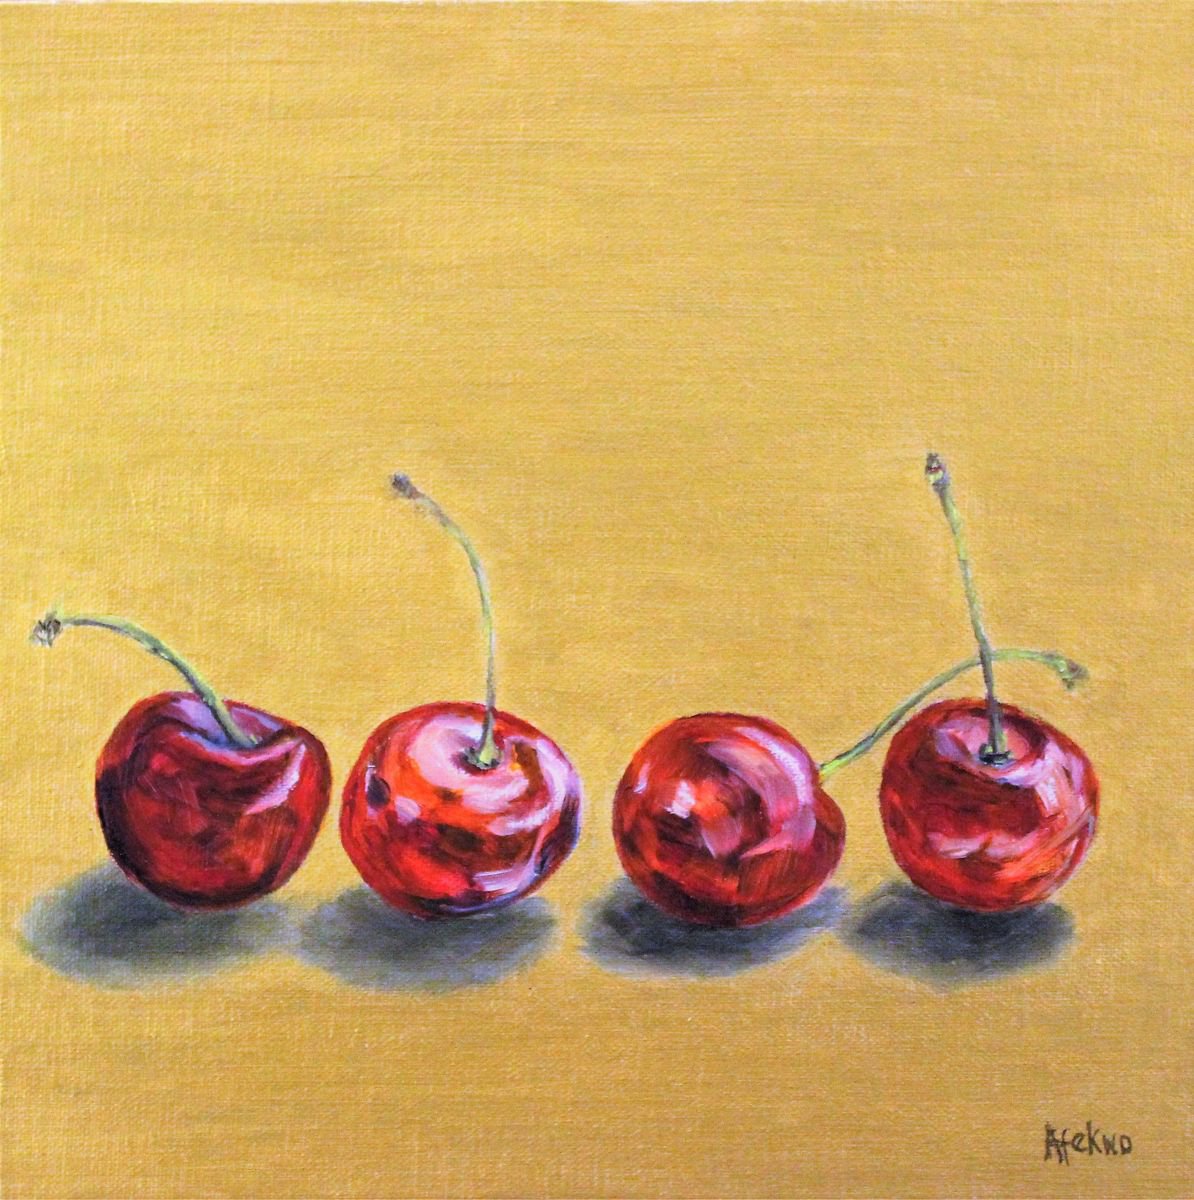 Dancing Cherries by Afekwo